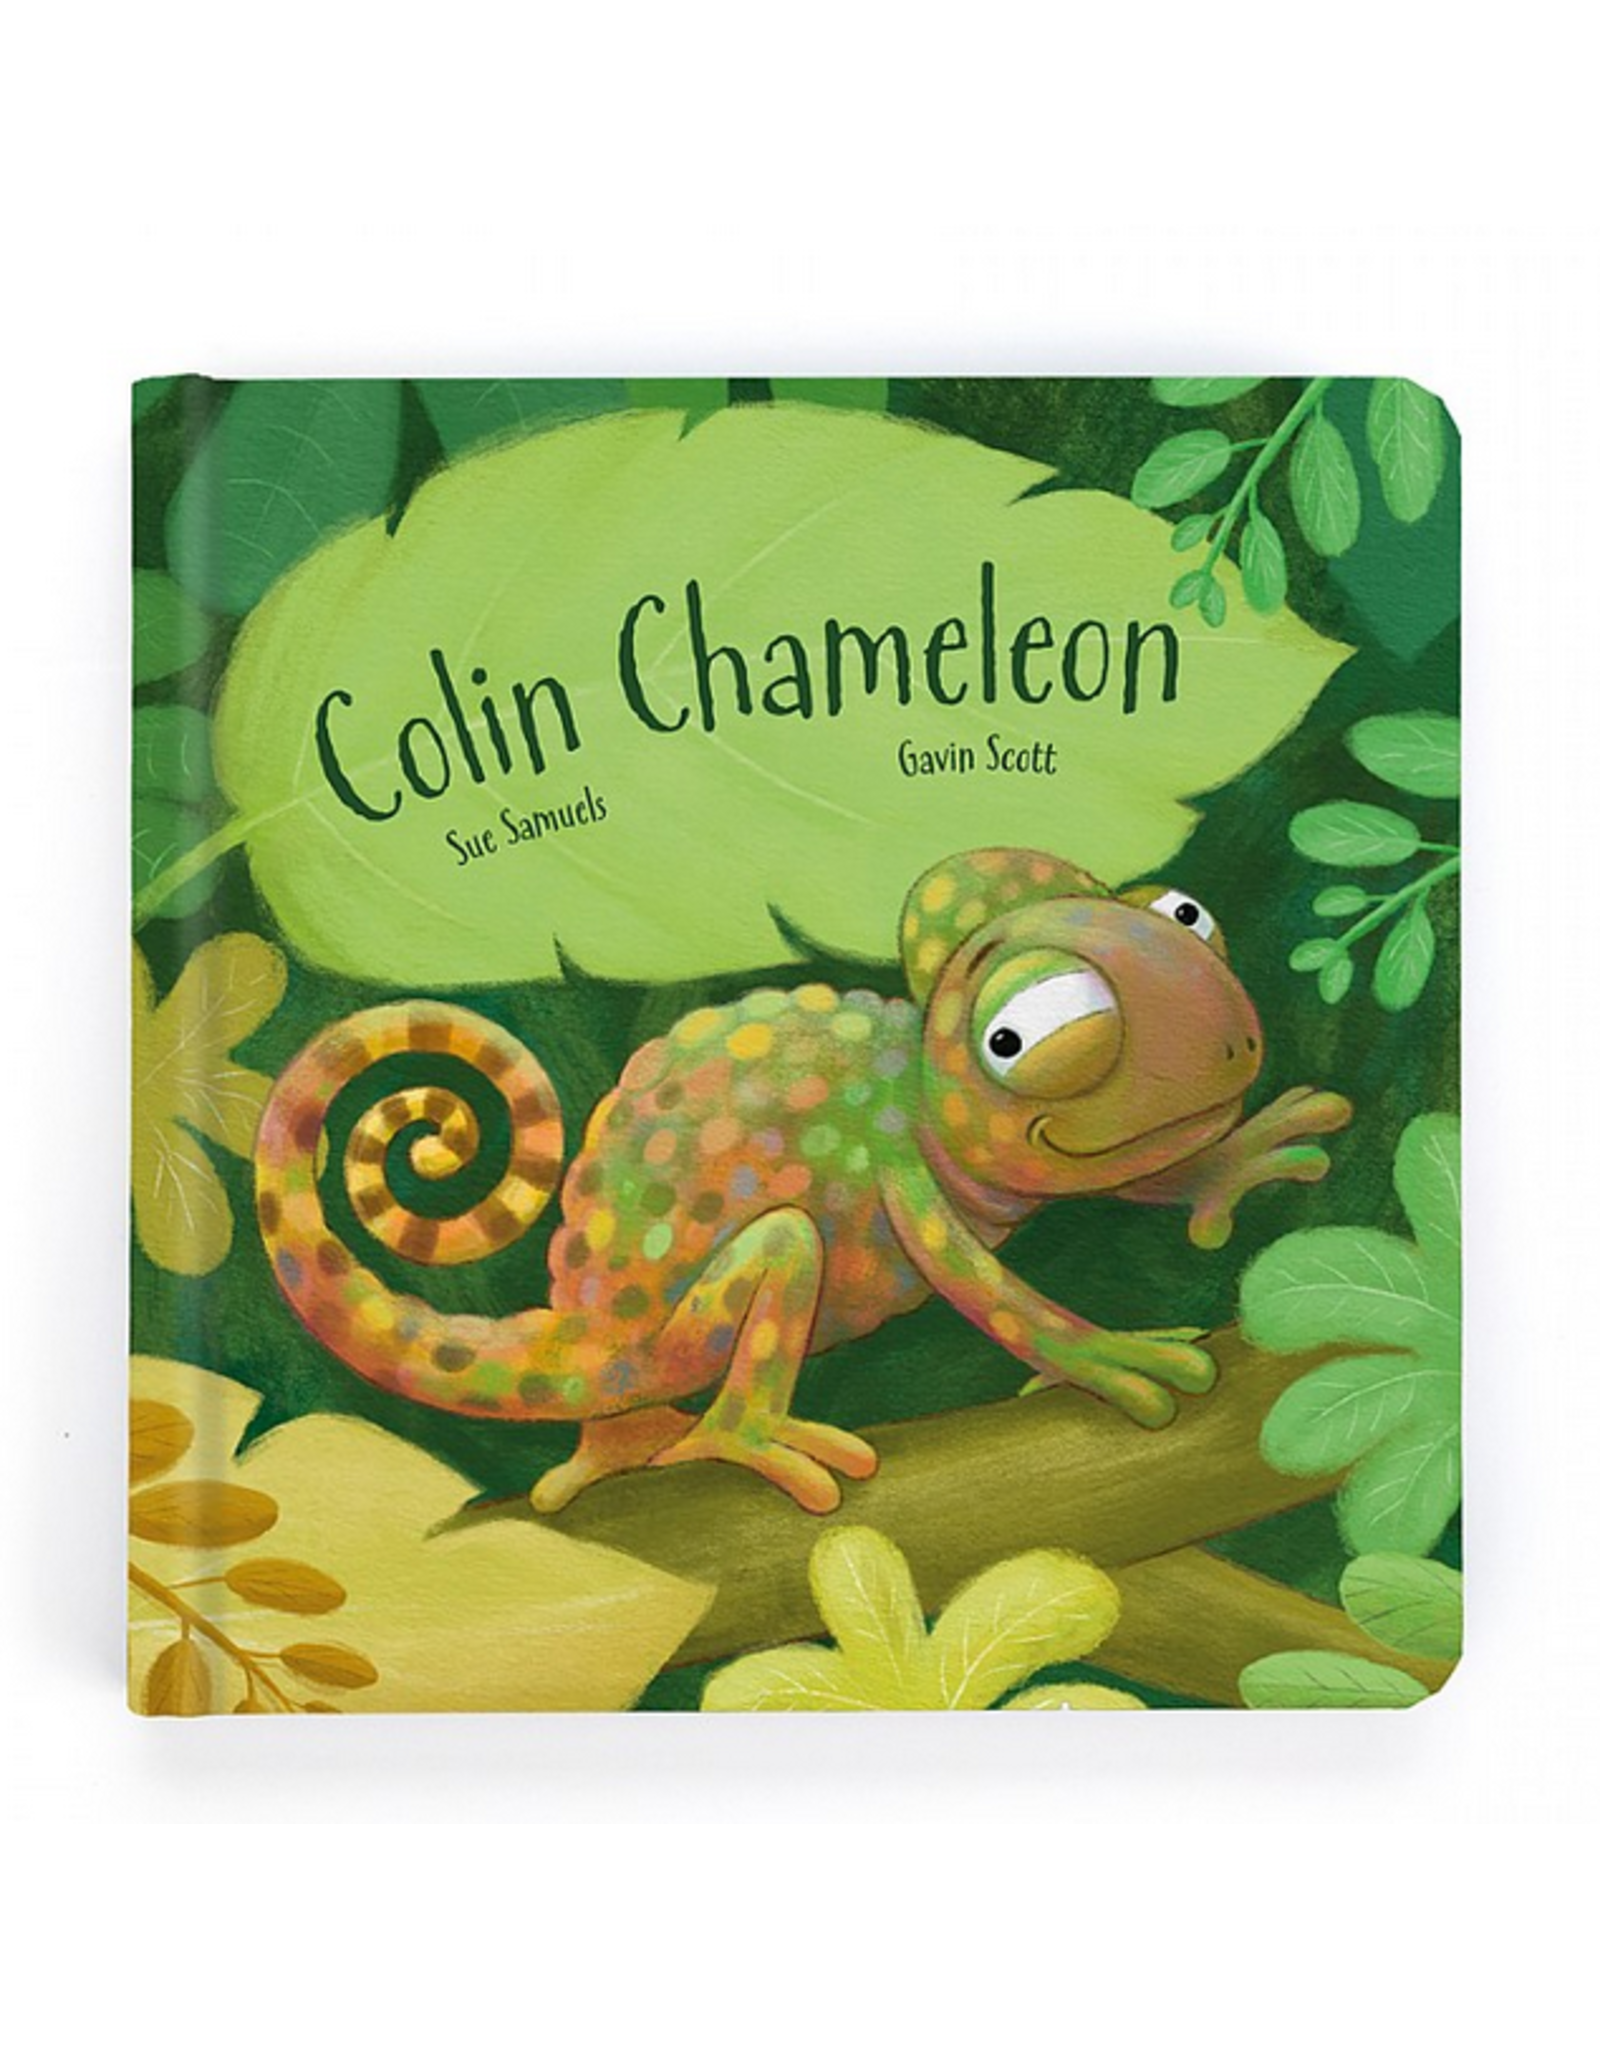 Jellycat Book, Colin Chameleon Board Book